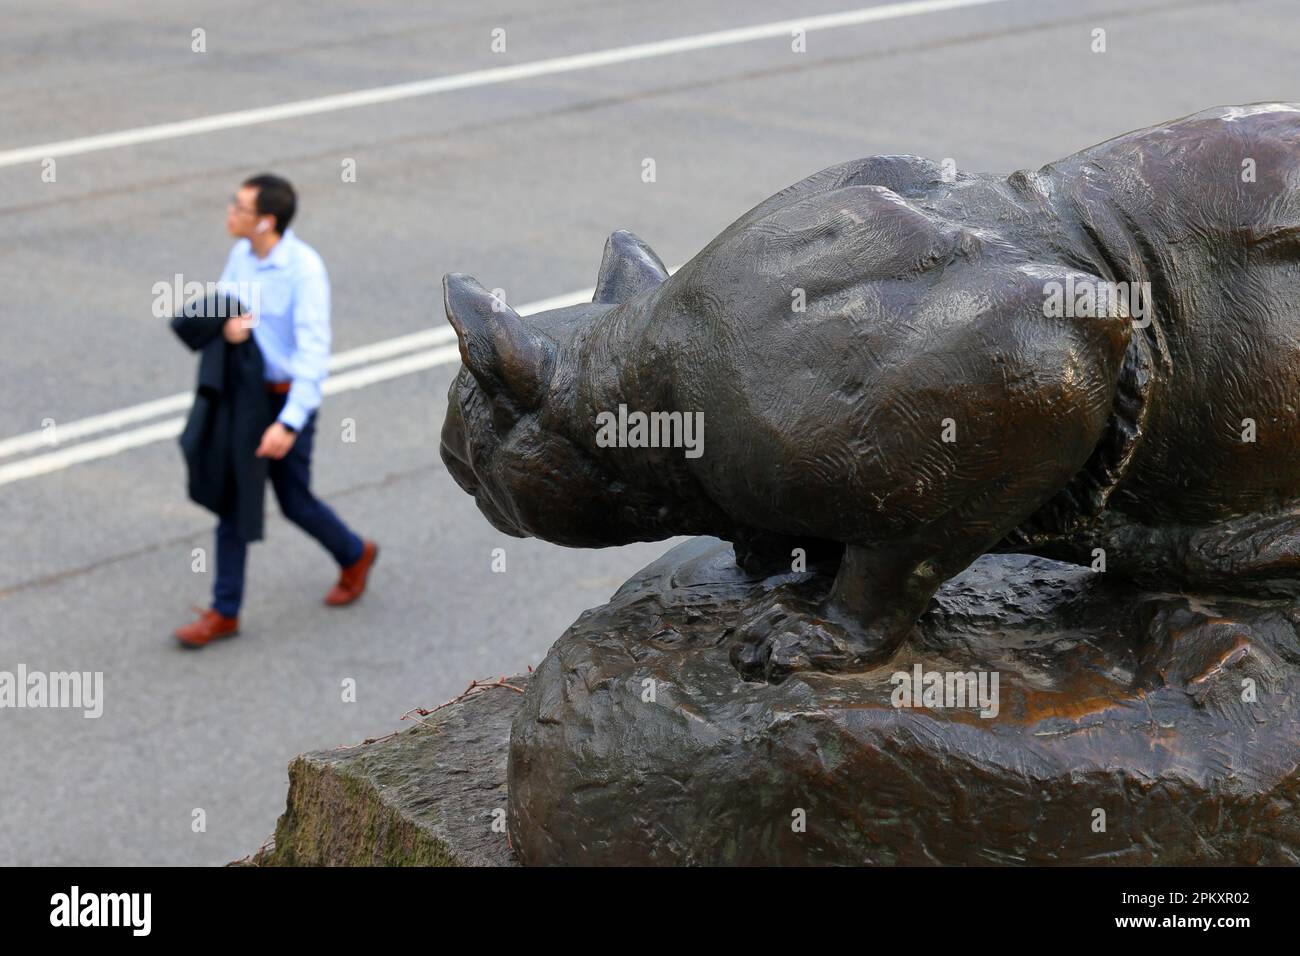 Eine Statue eines krummenden Panthers, neben einem Büroangestellten. Die Skulptur „Still Hunt“ von Edward Kemeys befindet sich im Central Park, New York City Stockfoto